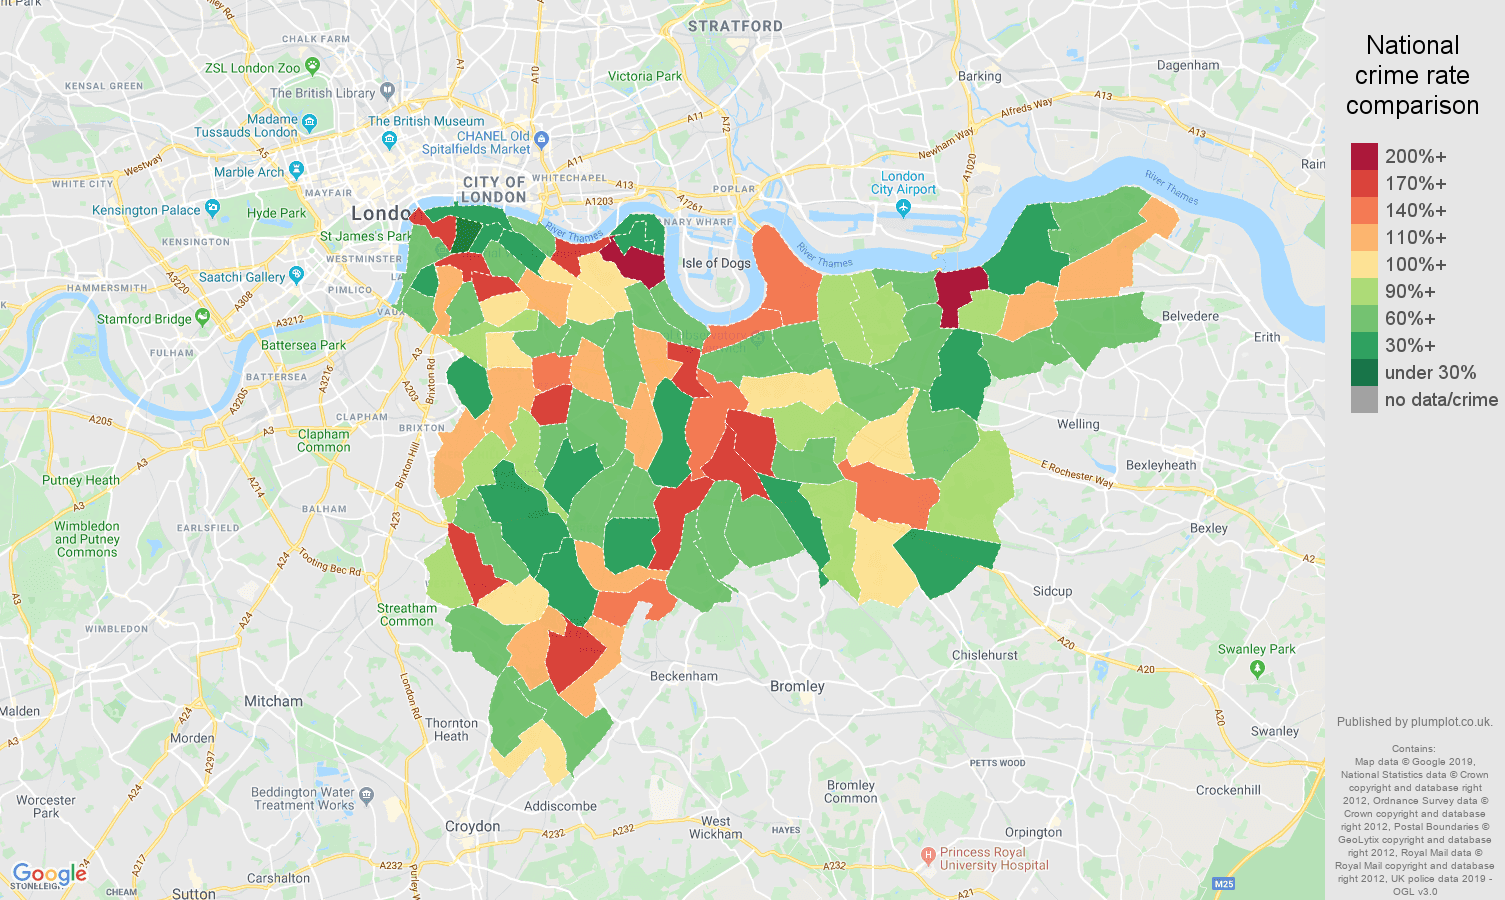 South East London public order crime rate comparison map